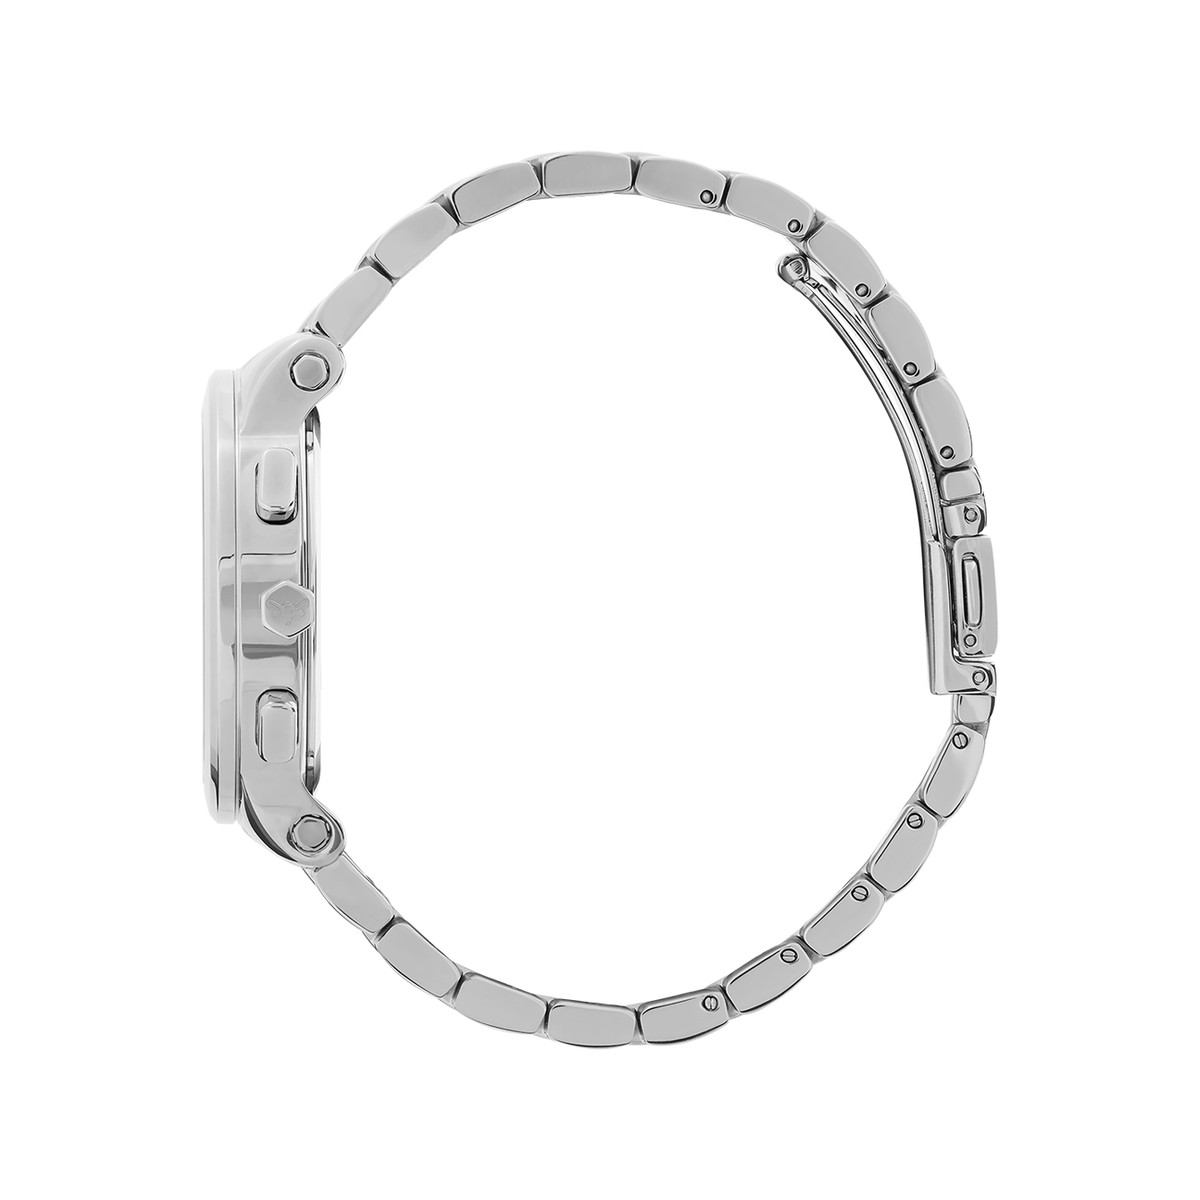 Montre OLIVIA BURTON multi function femme analogique, bracelet acier argent - vue 2